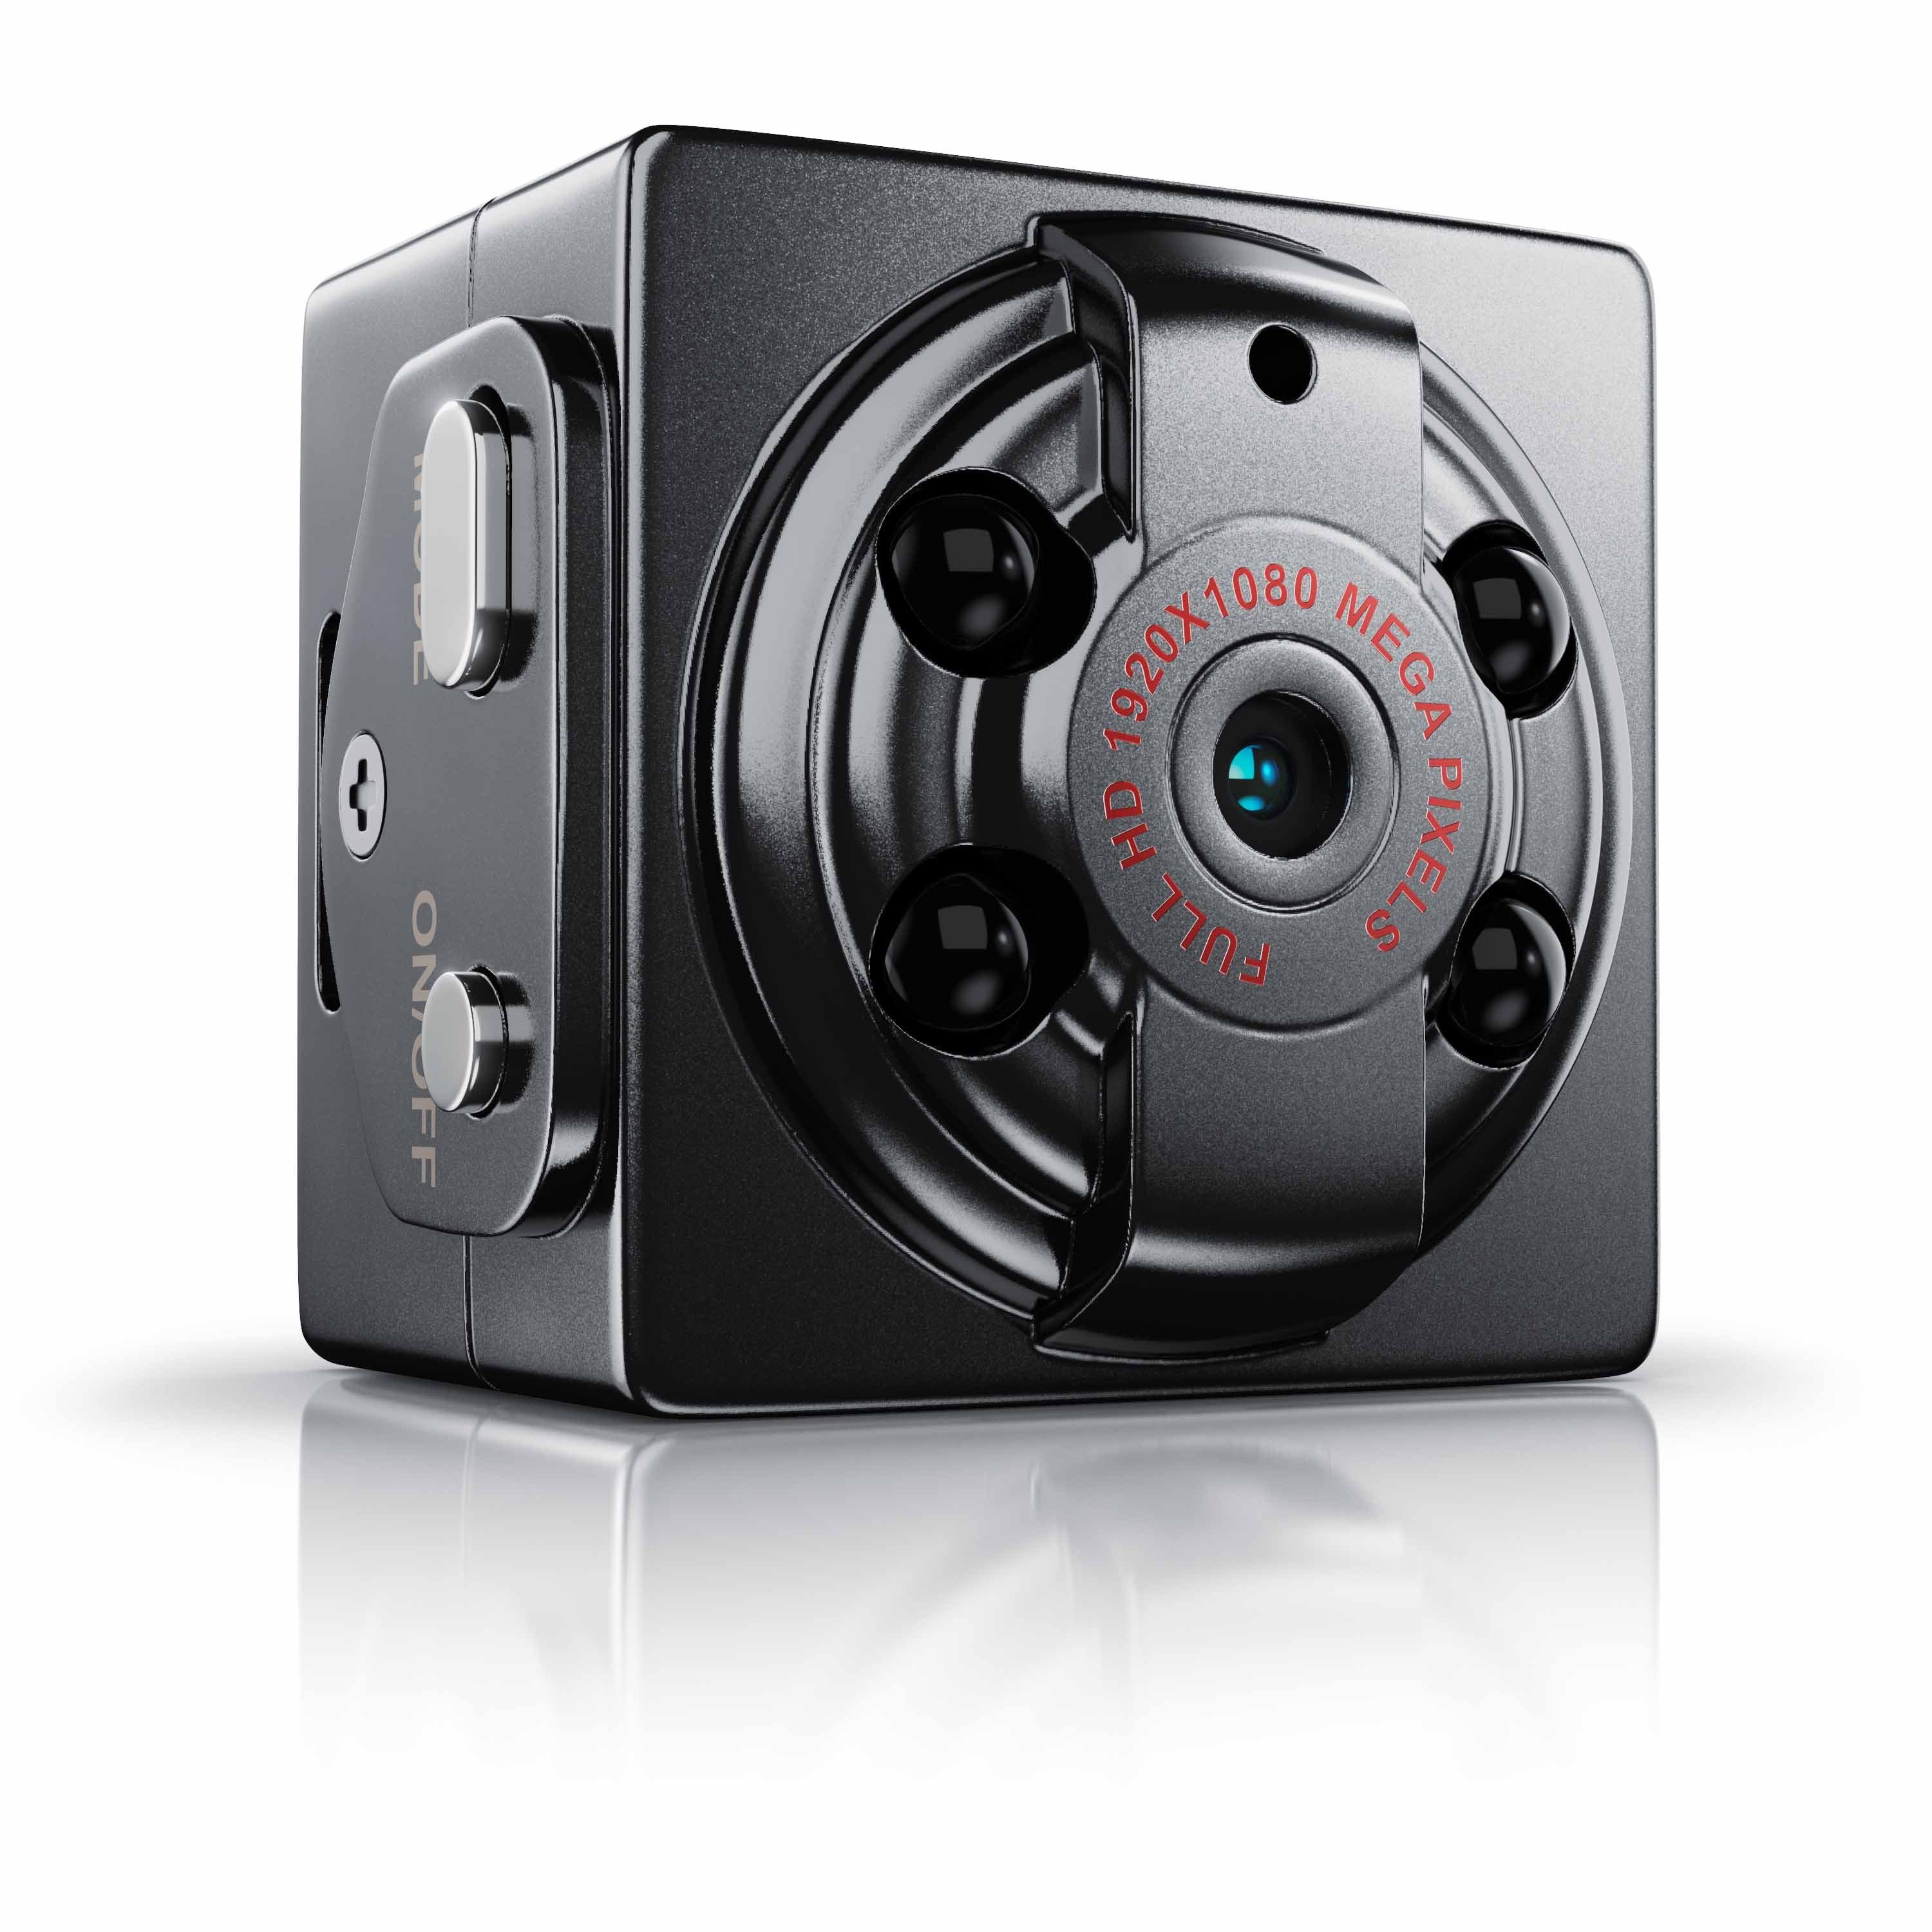 Aplic Überwachungskamera (Außenbereich, Innenbereich, Mini FHD Kamera mit  Nachtsichtfunktion, Bewegungserkennung & Akku)